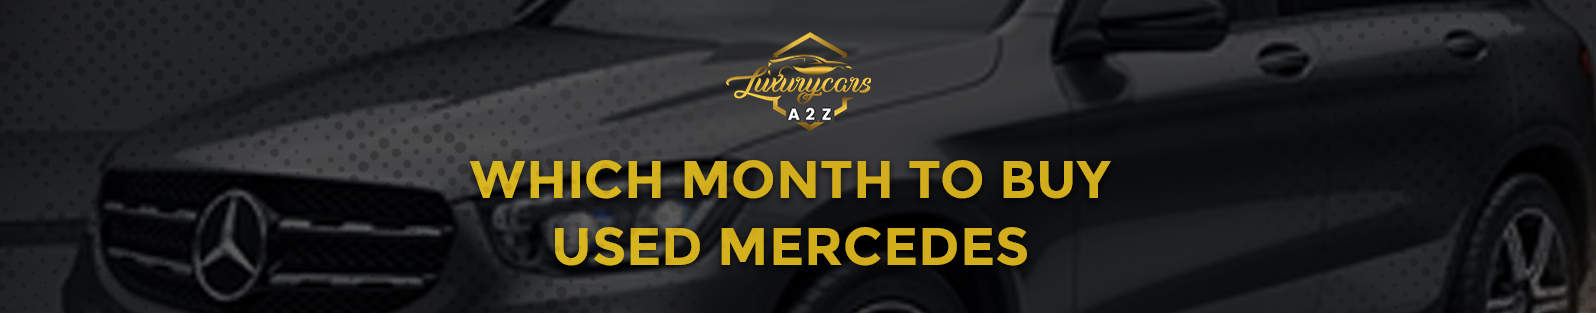 Quel mois pour acheter une Mercedes d'occasion